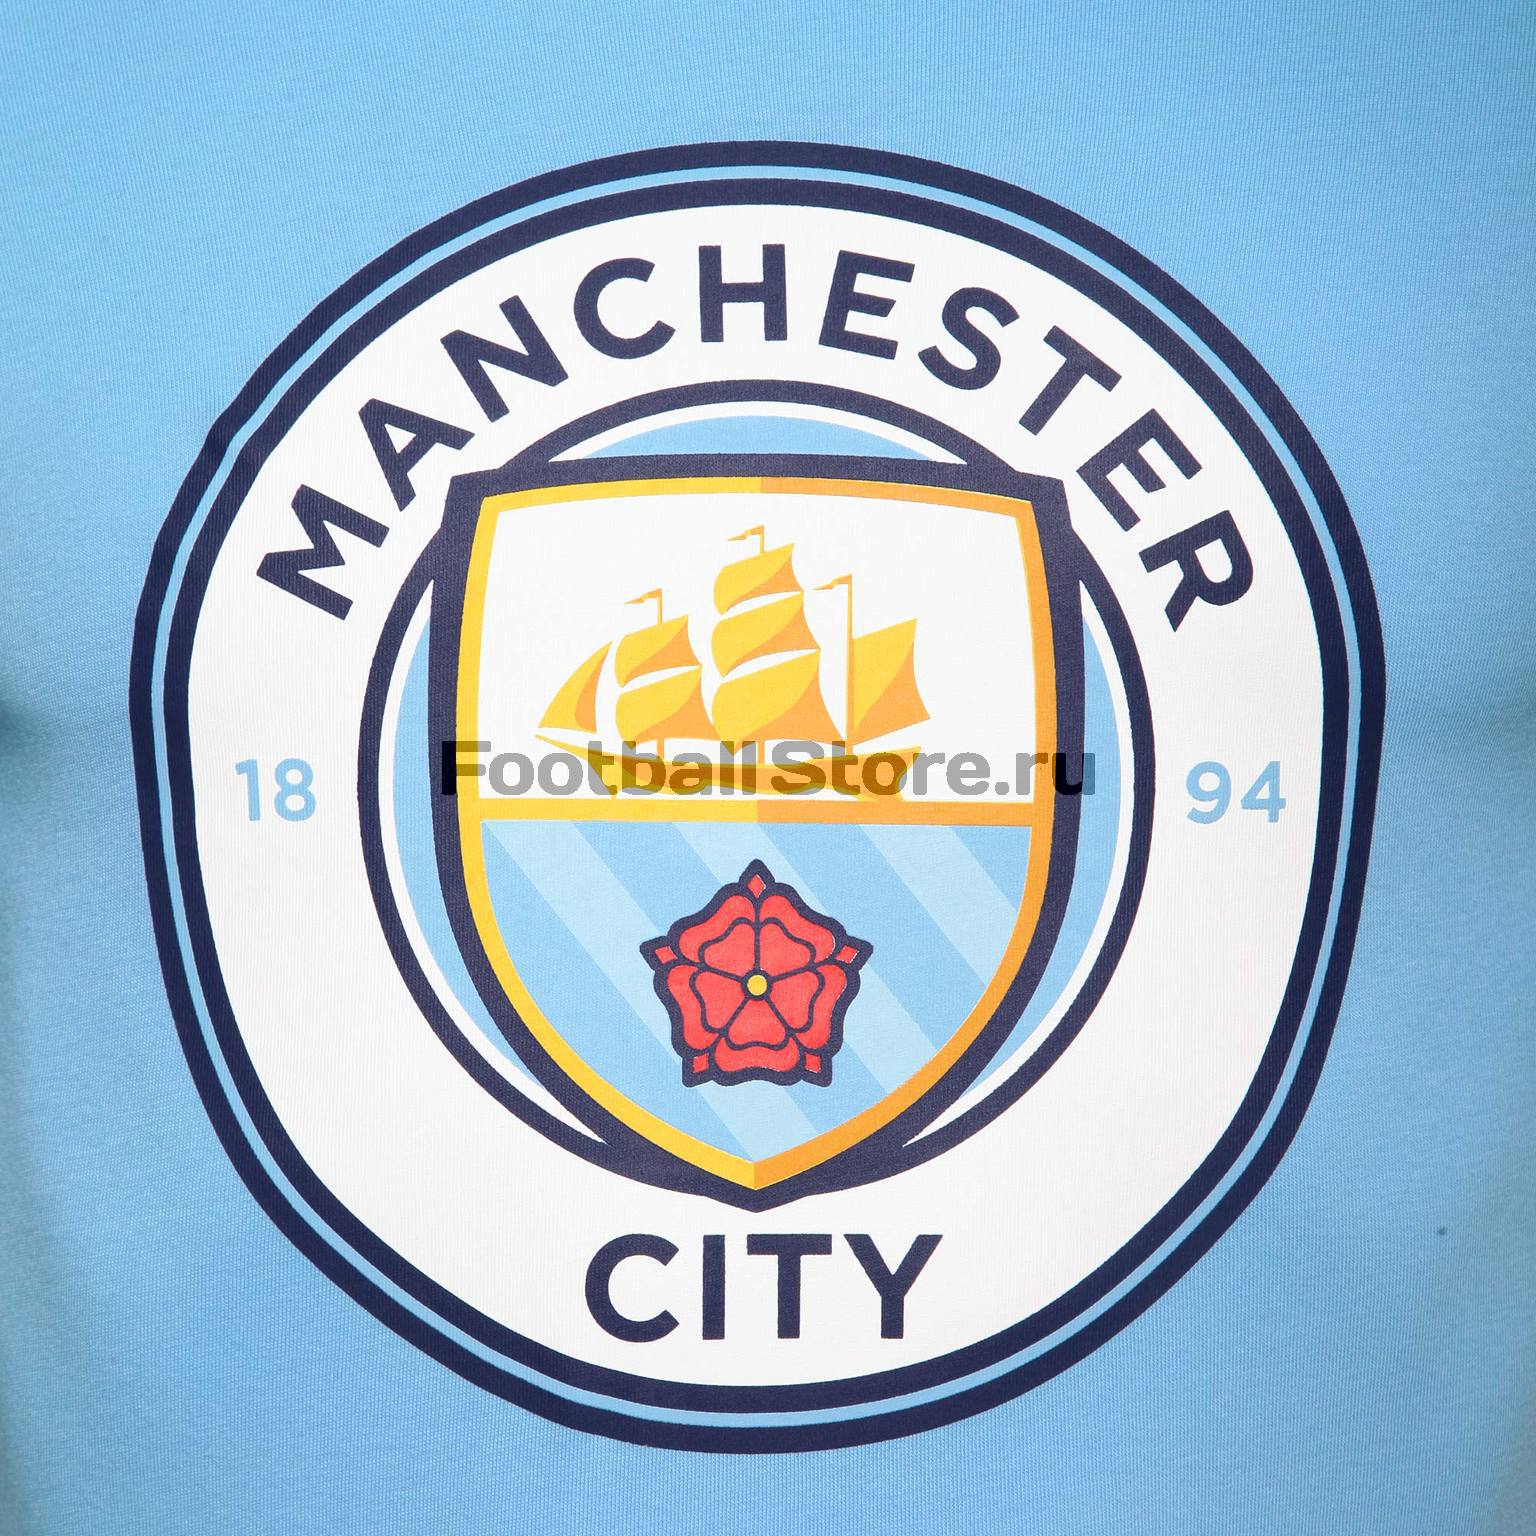 Футболка хлопковая Nike Manchester City 898623-488